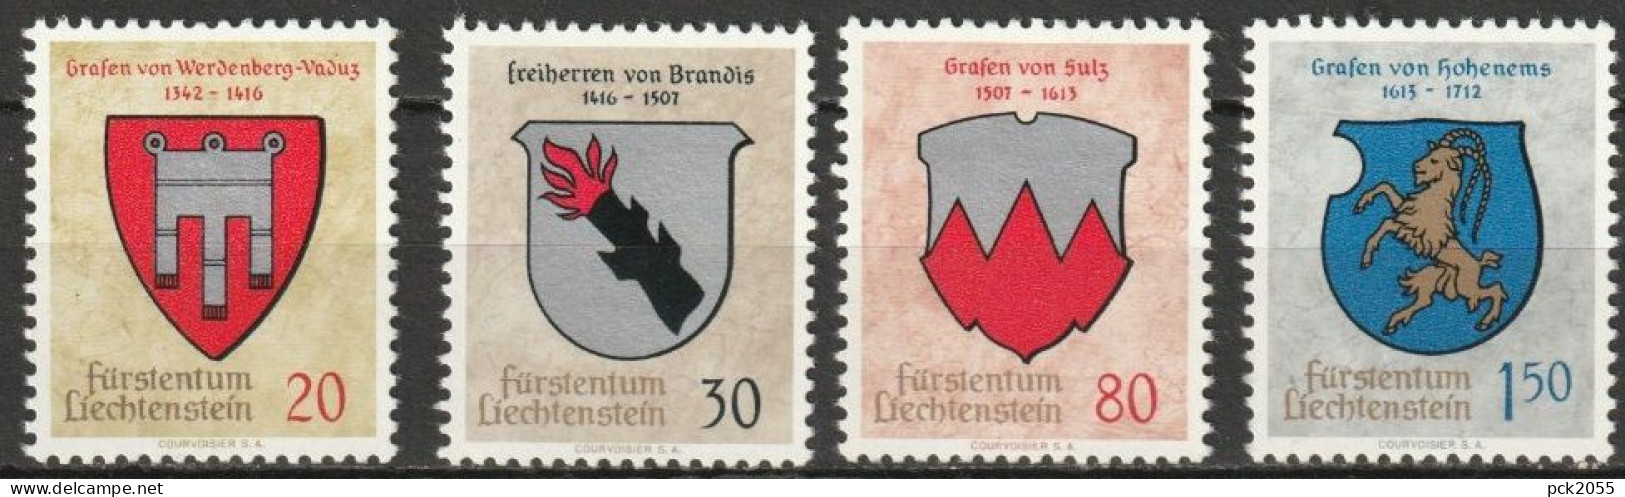 Lichtenstein 1964 MiNr.440 - 443 ** Postfrisch Wappen ( B 2806 ) Günstige Versandkosten - Ongebruikt